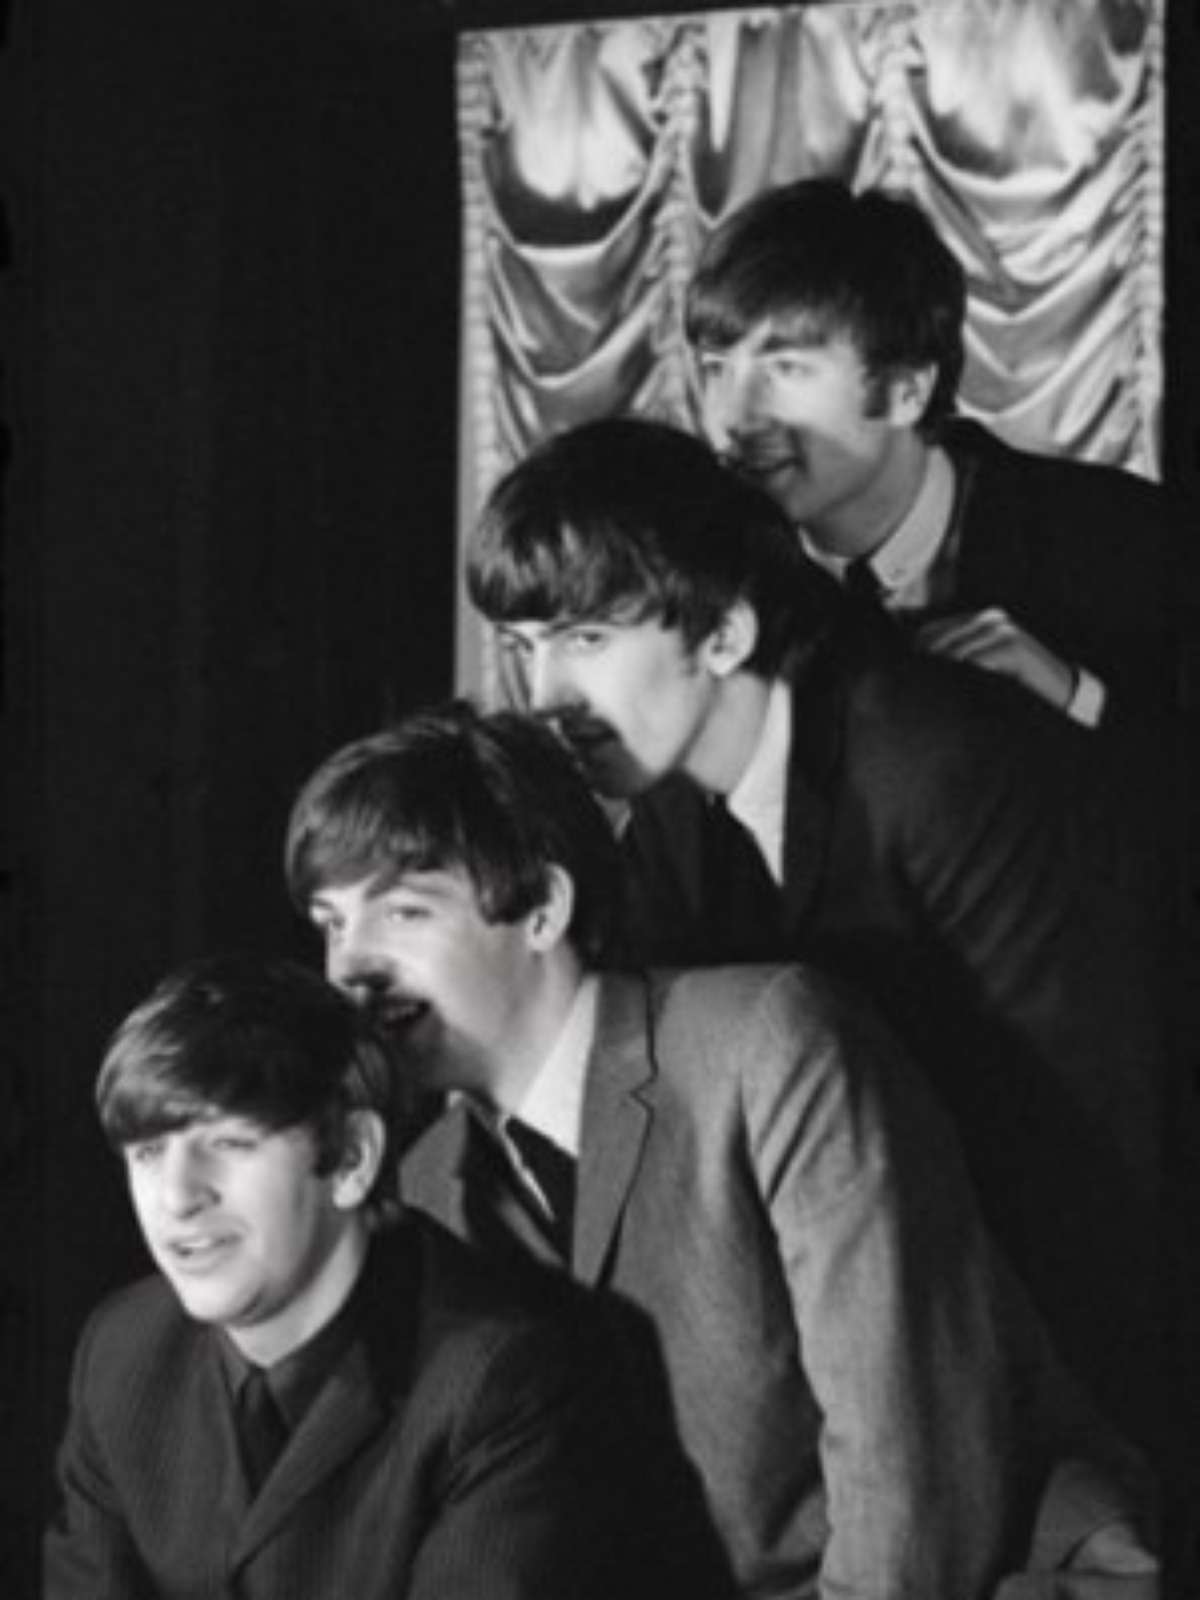 Paul McCartney anuncia música inédita dos Beatles, gravada com inteligência  artificial